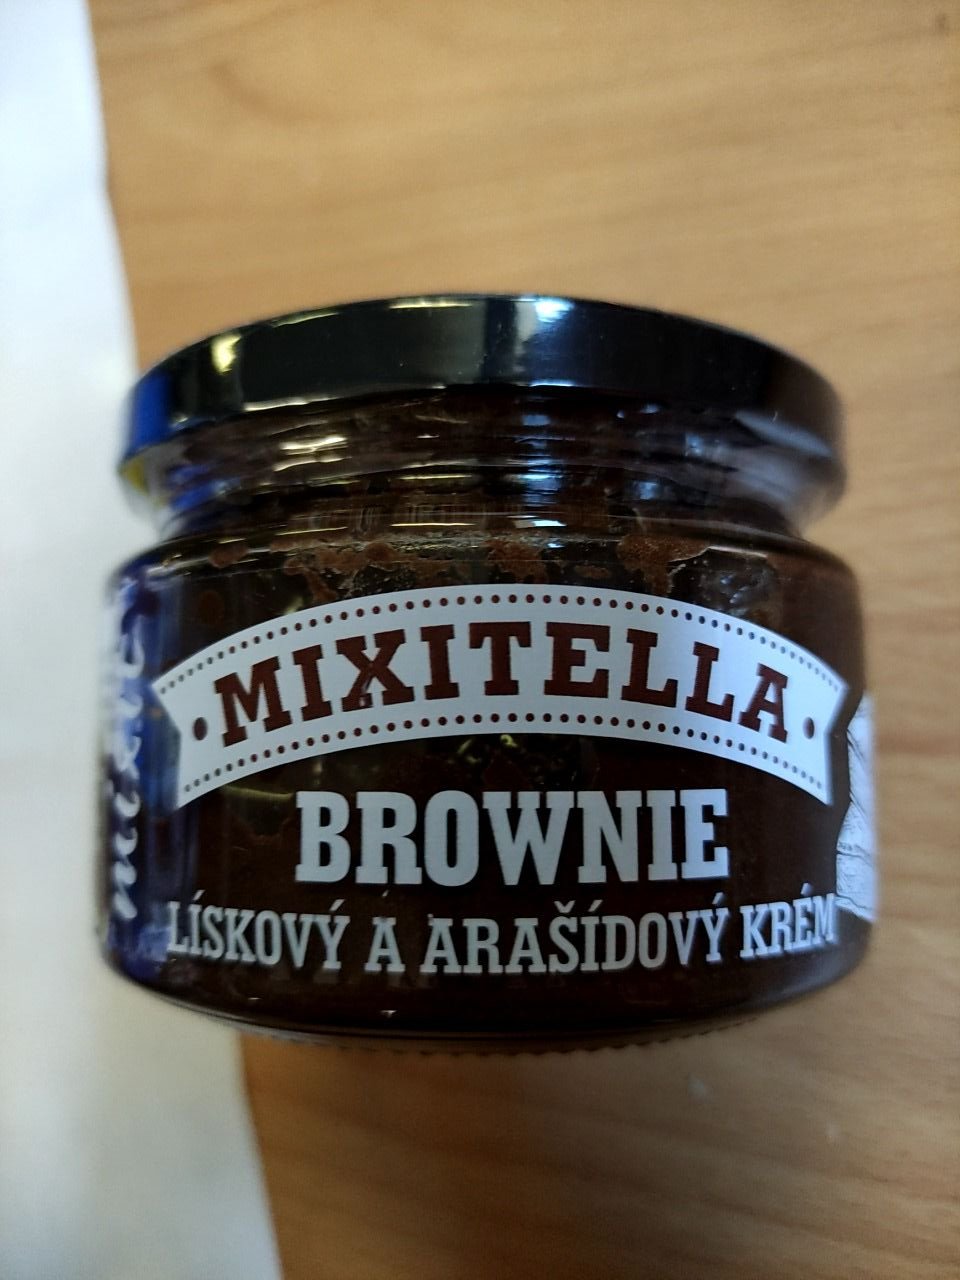 Brownie - lískový a arašídový krém Mixitella 250g